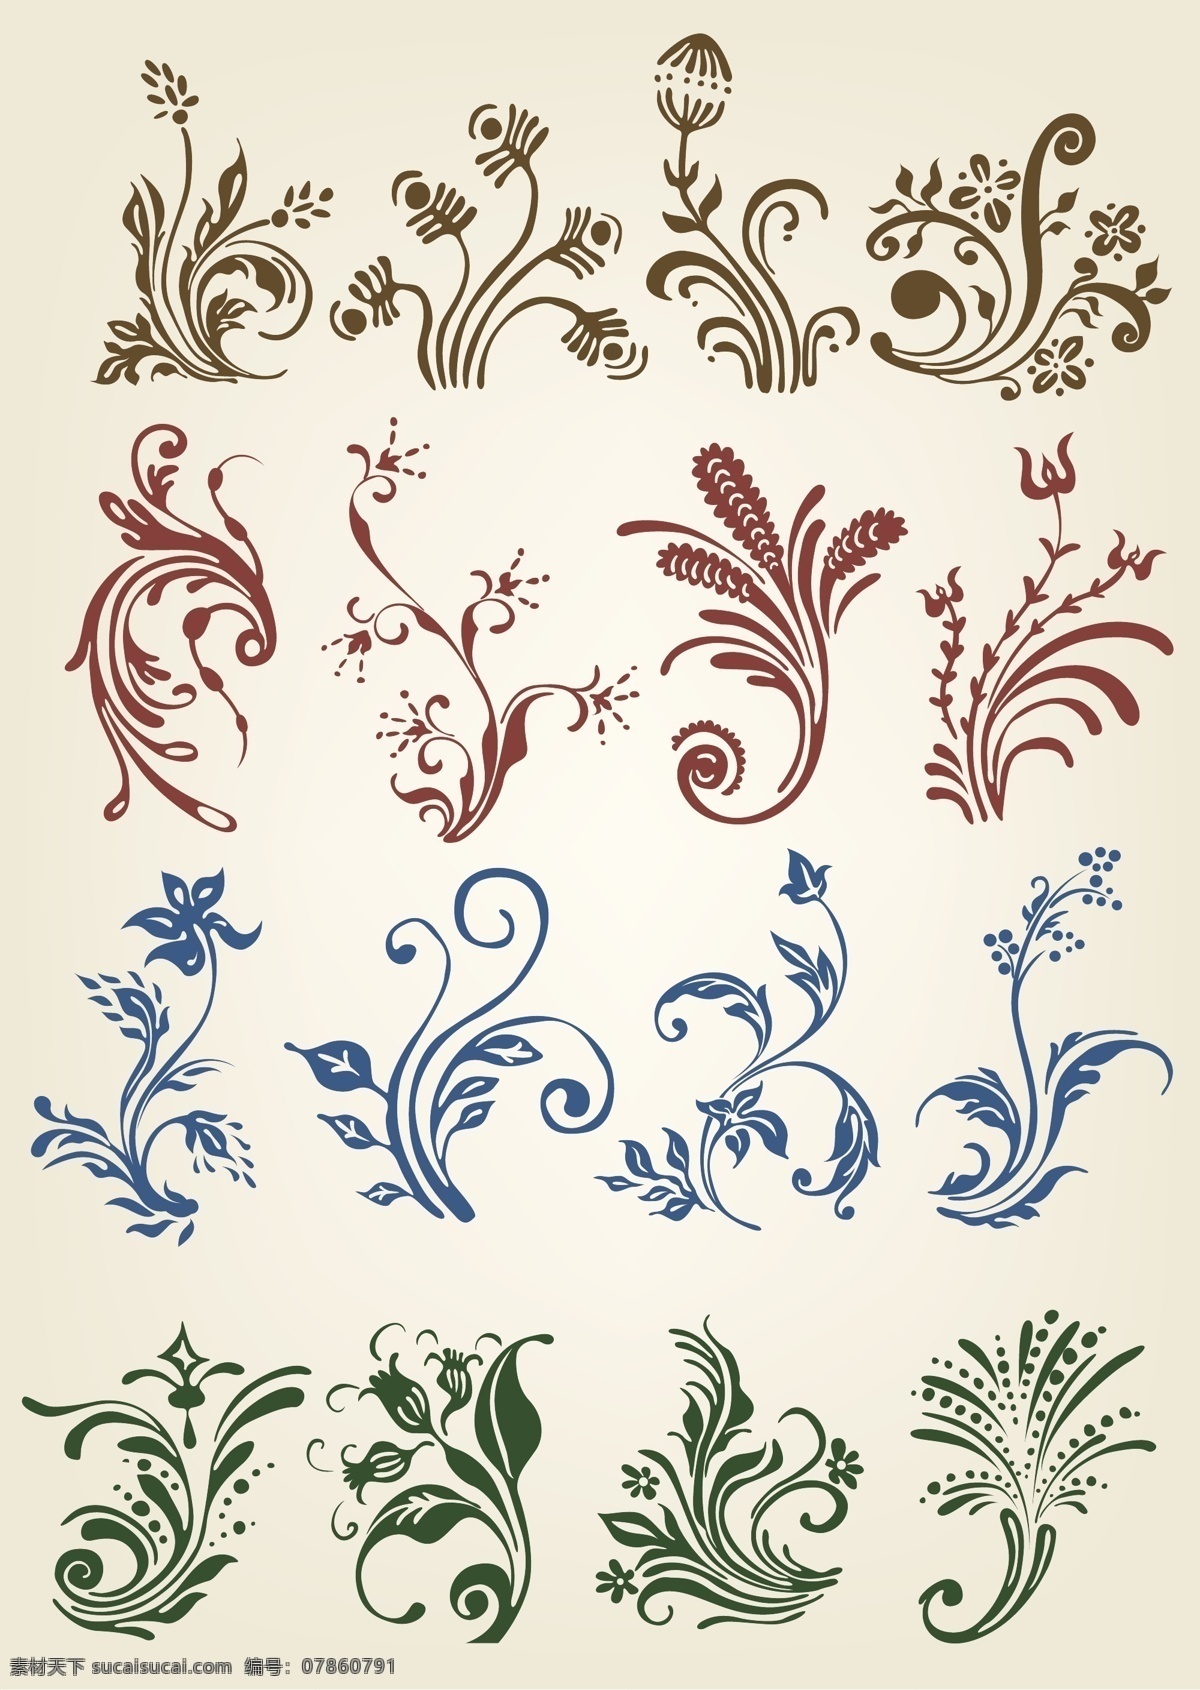 欧式 古典 华丽 花纹 矢量 个性 动感 潮流 装饰 藤蔓 植物 花纹花边 底纹边框